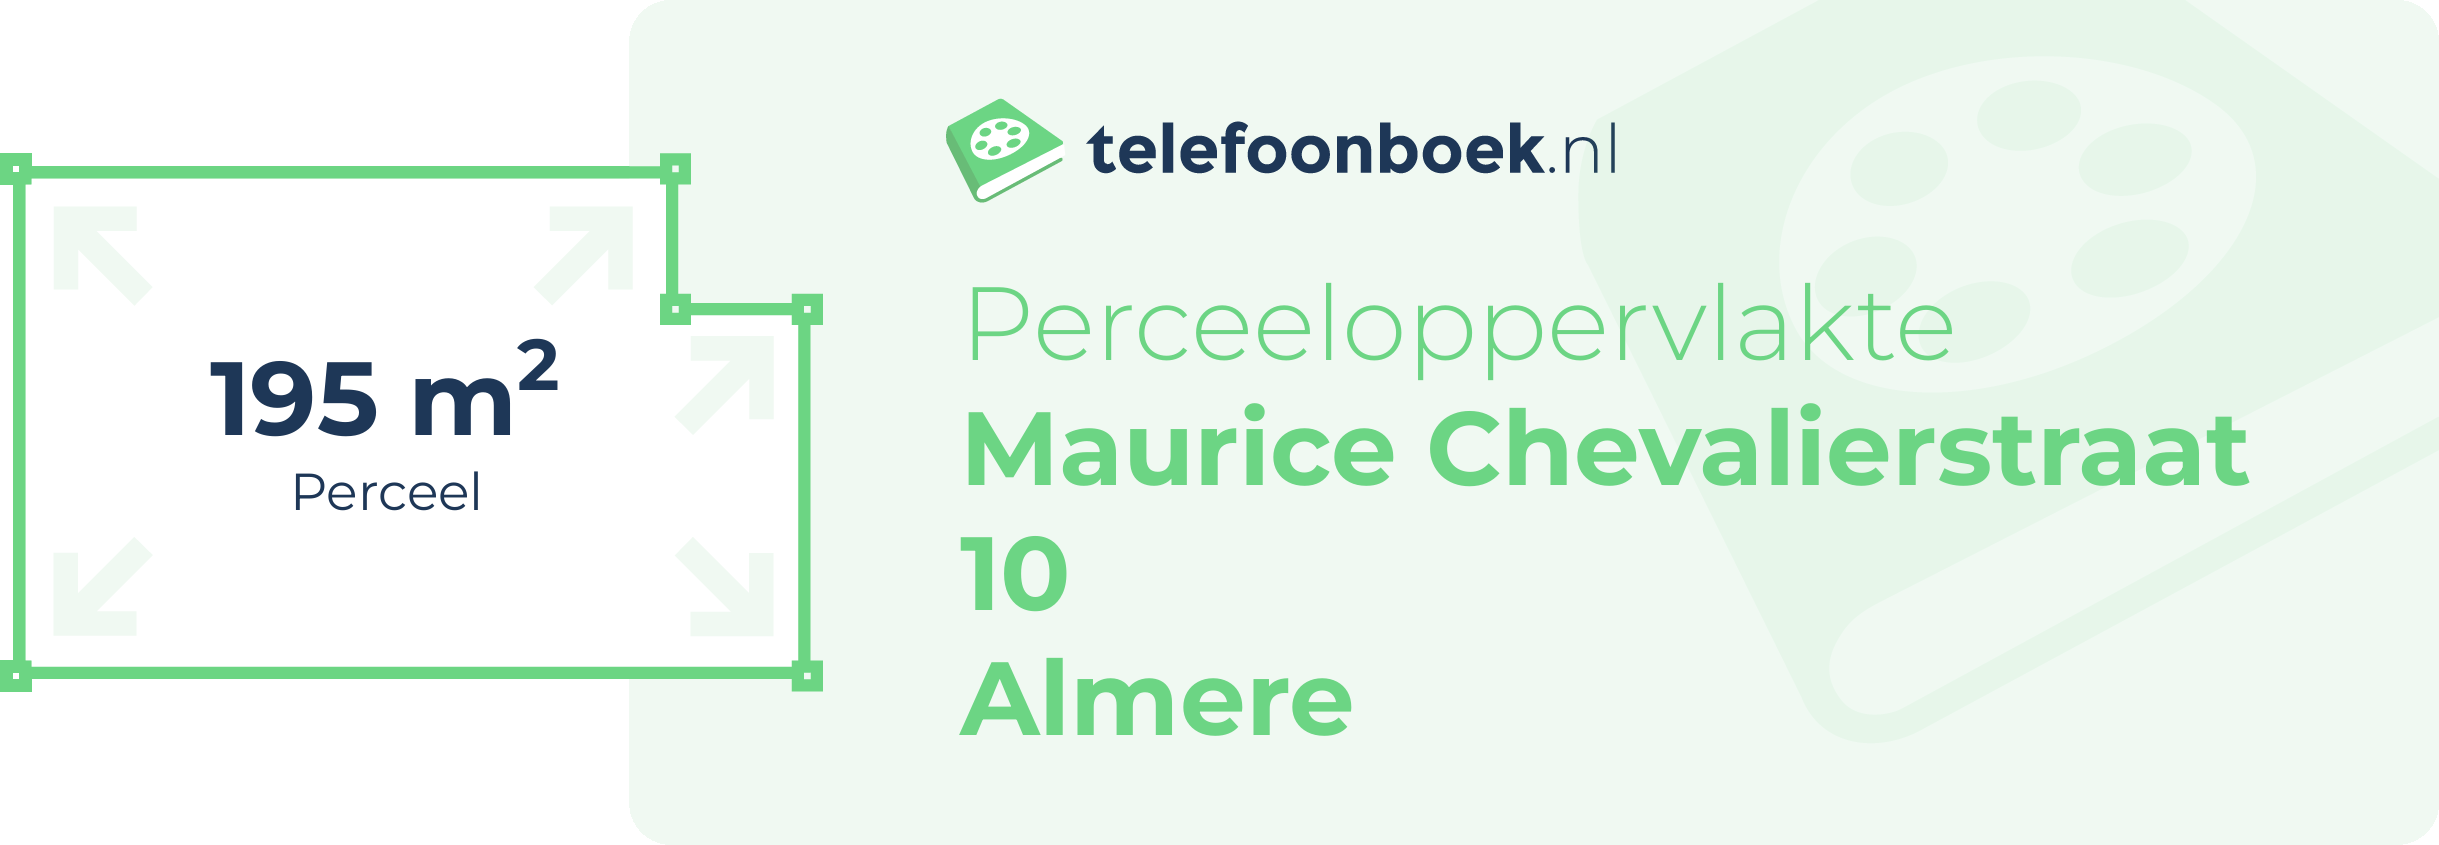 Perceeloppervlakte Maurice Chevalierstraat 10 Almere